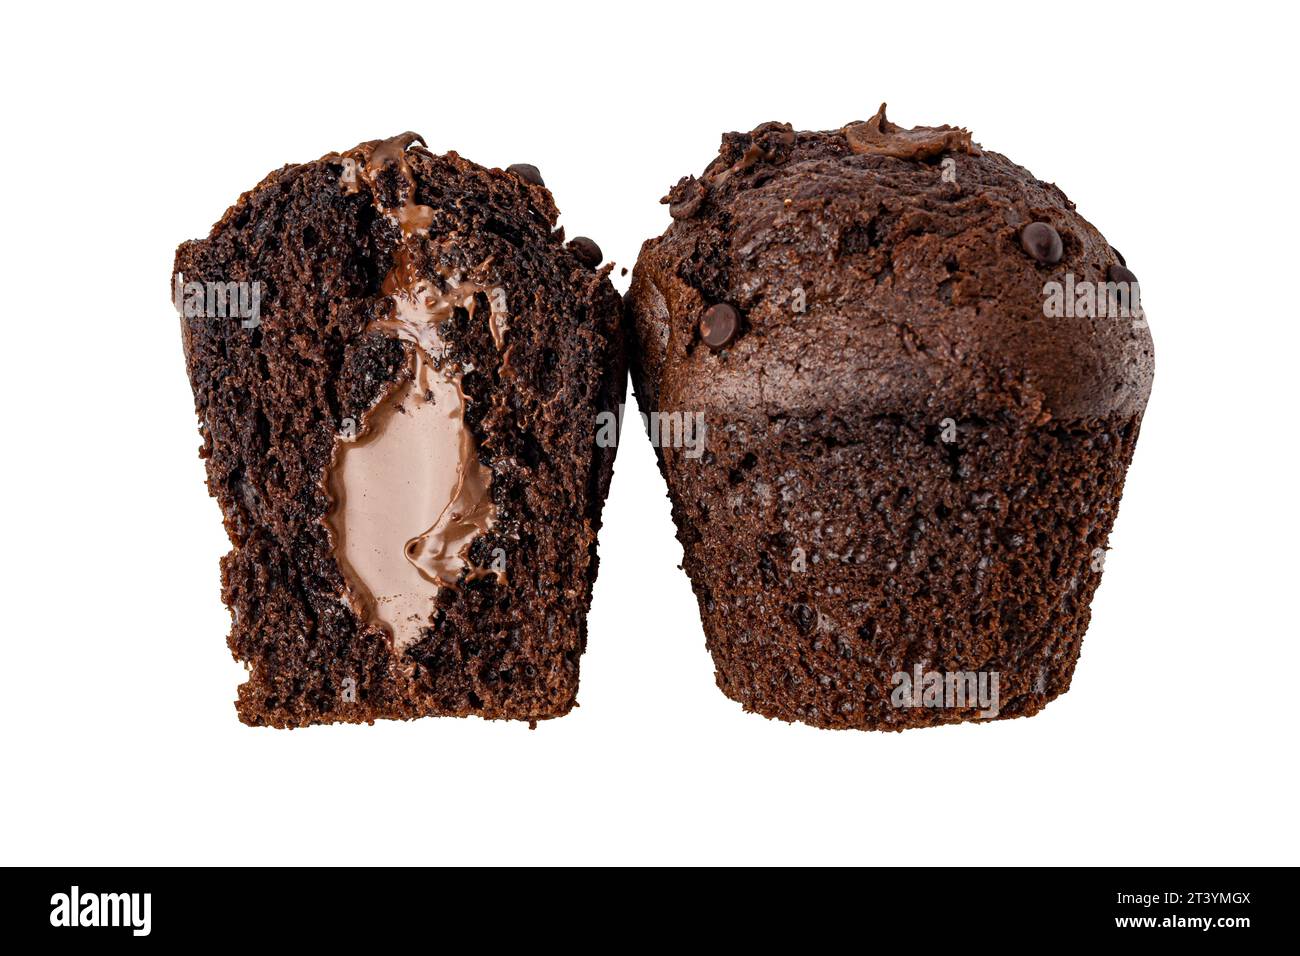 due cupcake al cioccolato su sfondo bianco Foto Stock